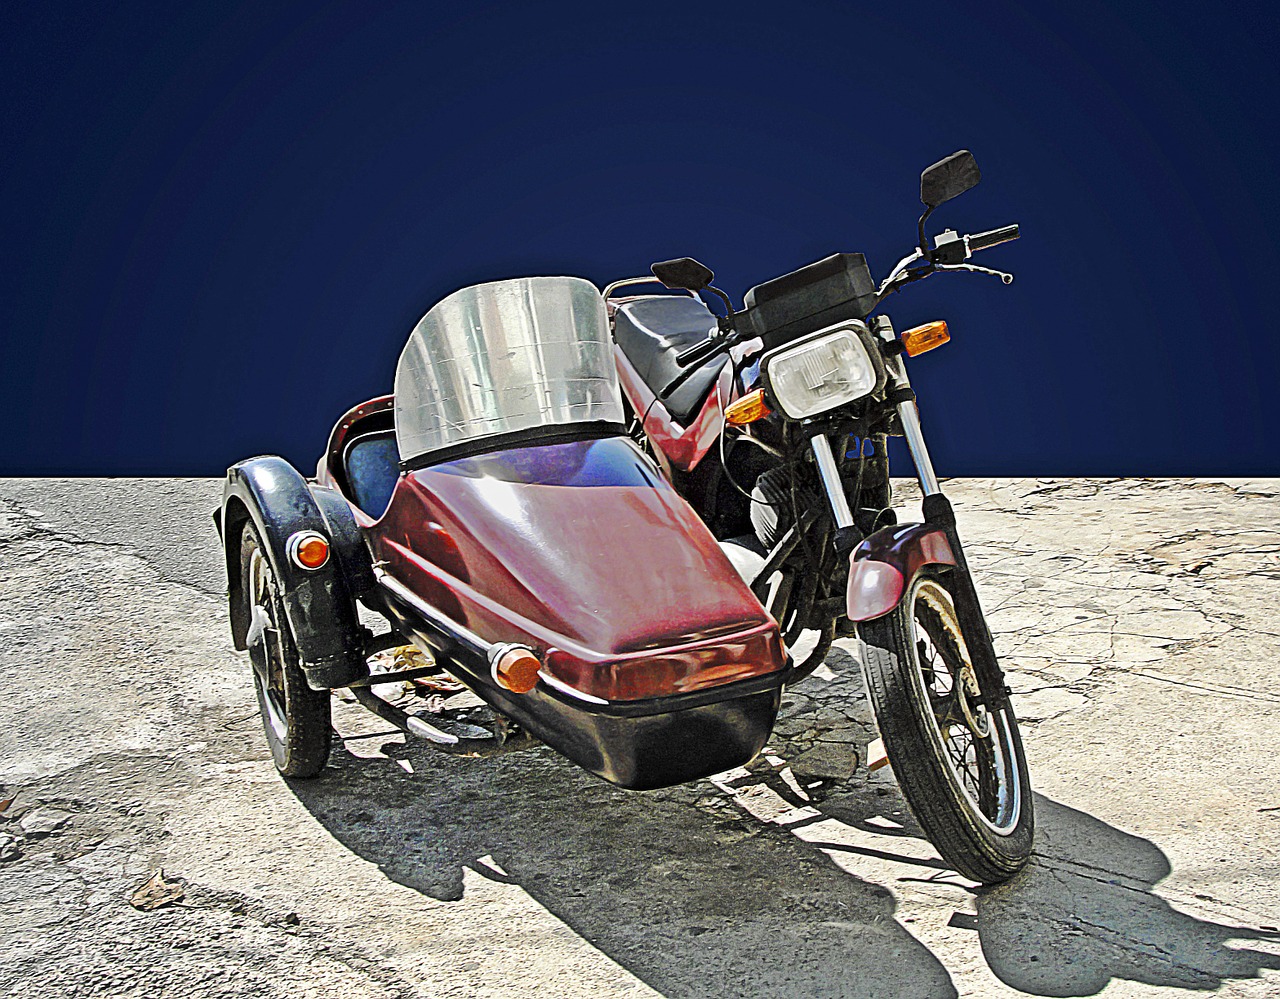 moto sidecar vehicle free photo